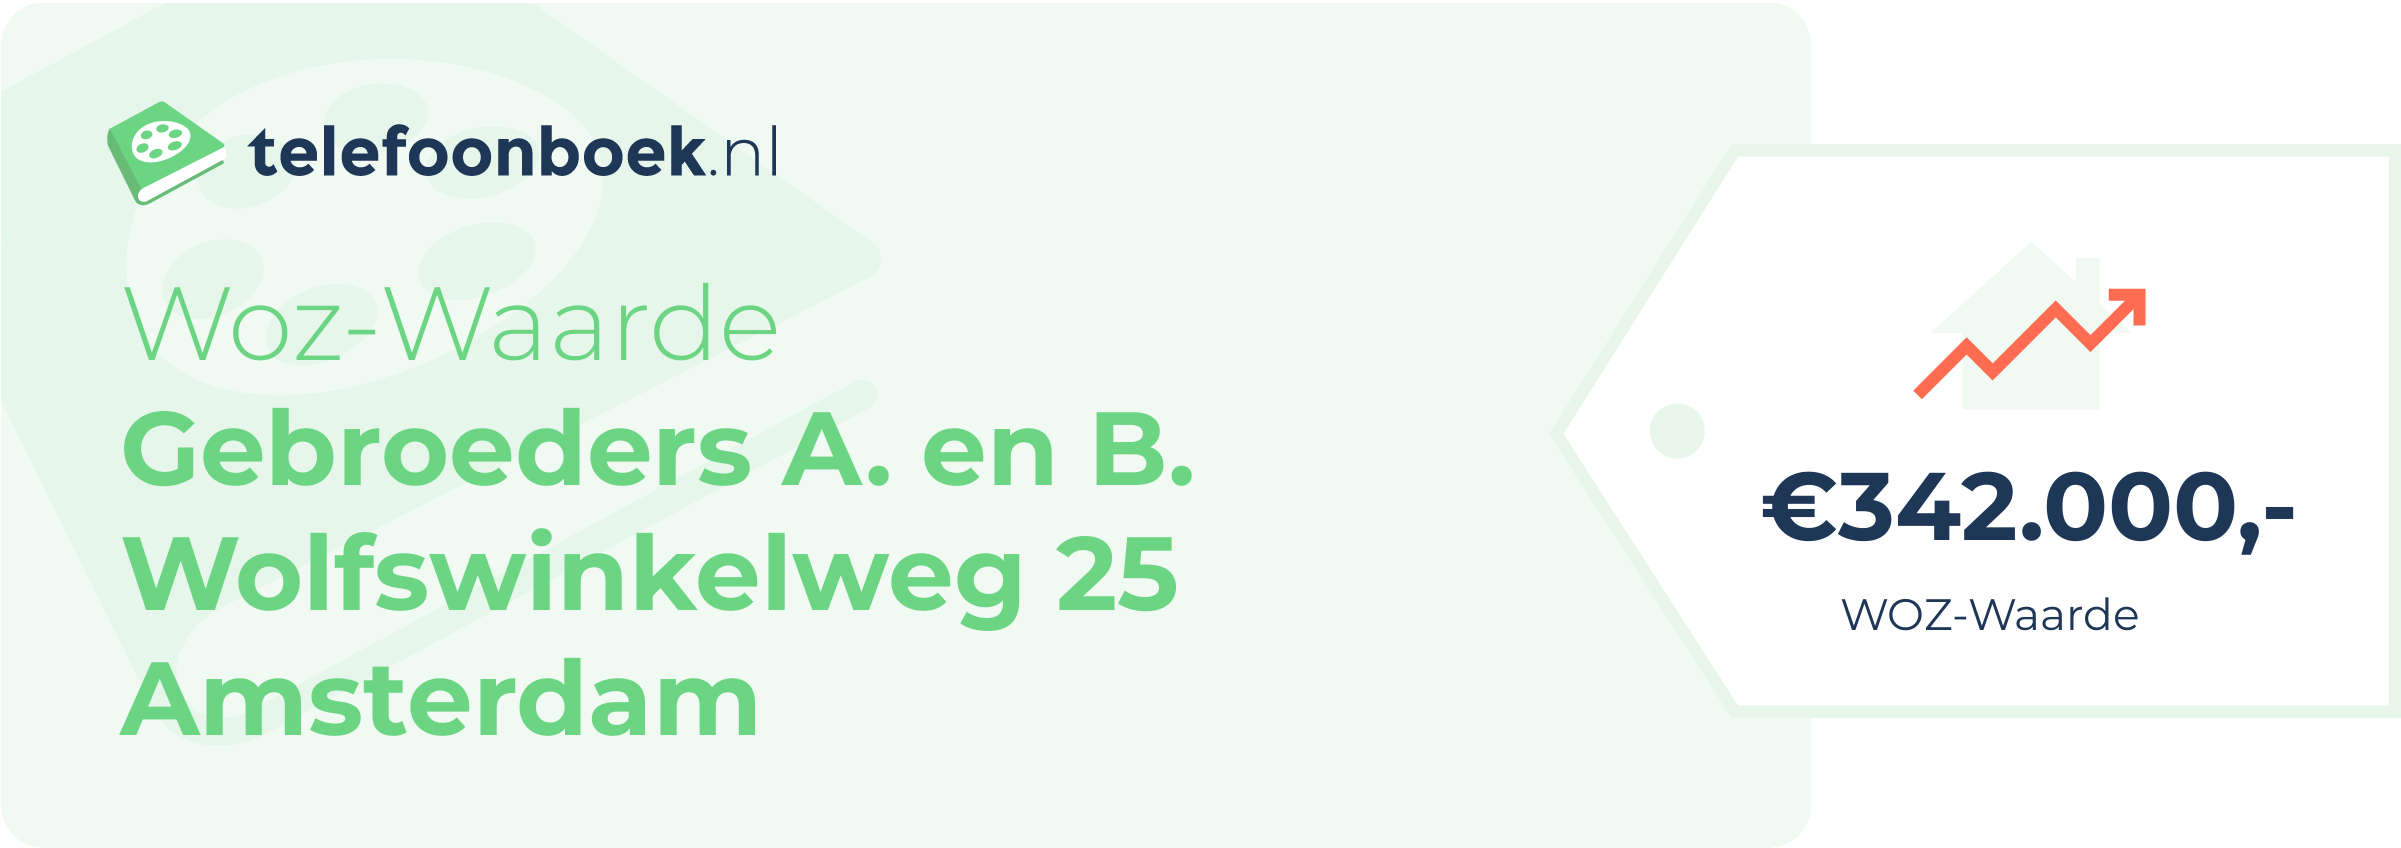 WOZ-waarde Gebroeders A. En B. Wolfswinkelweg 25 Amsterdam